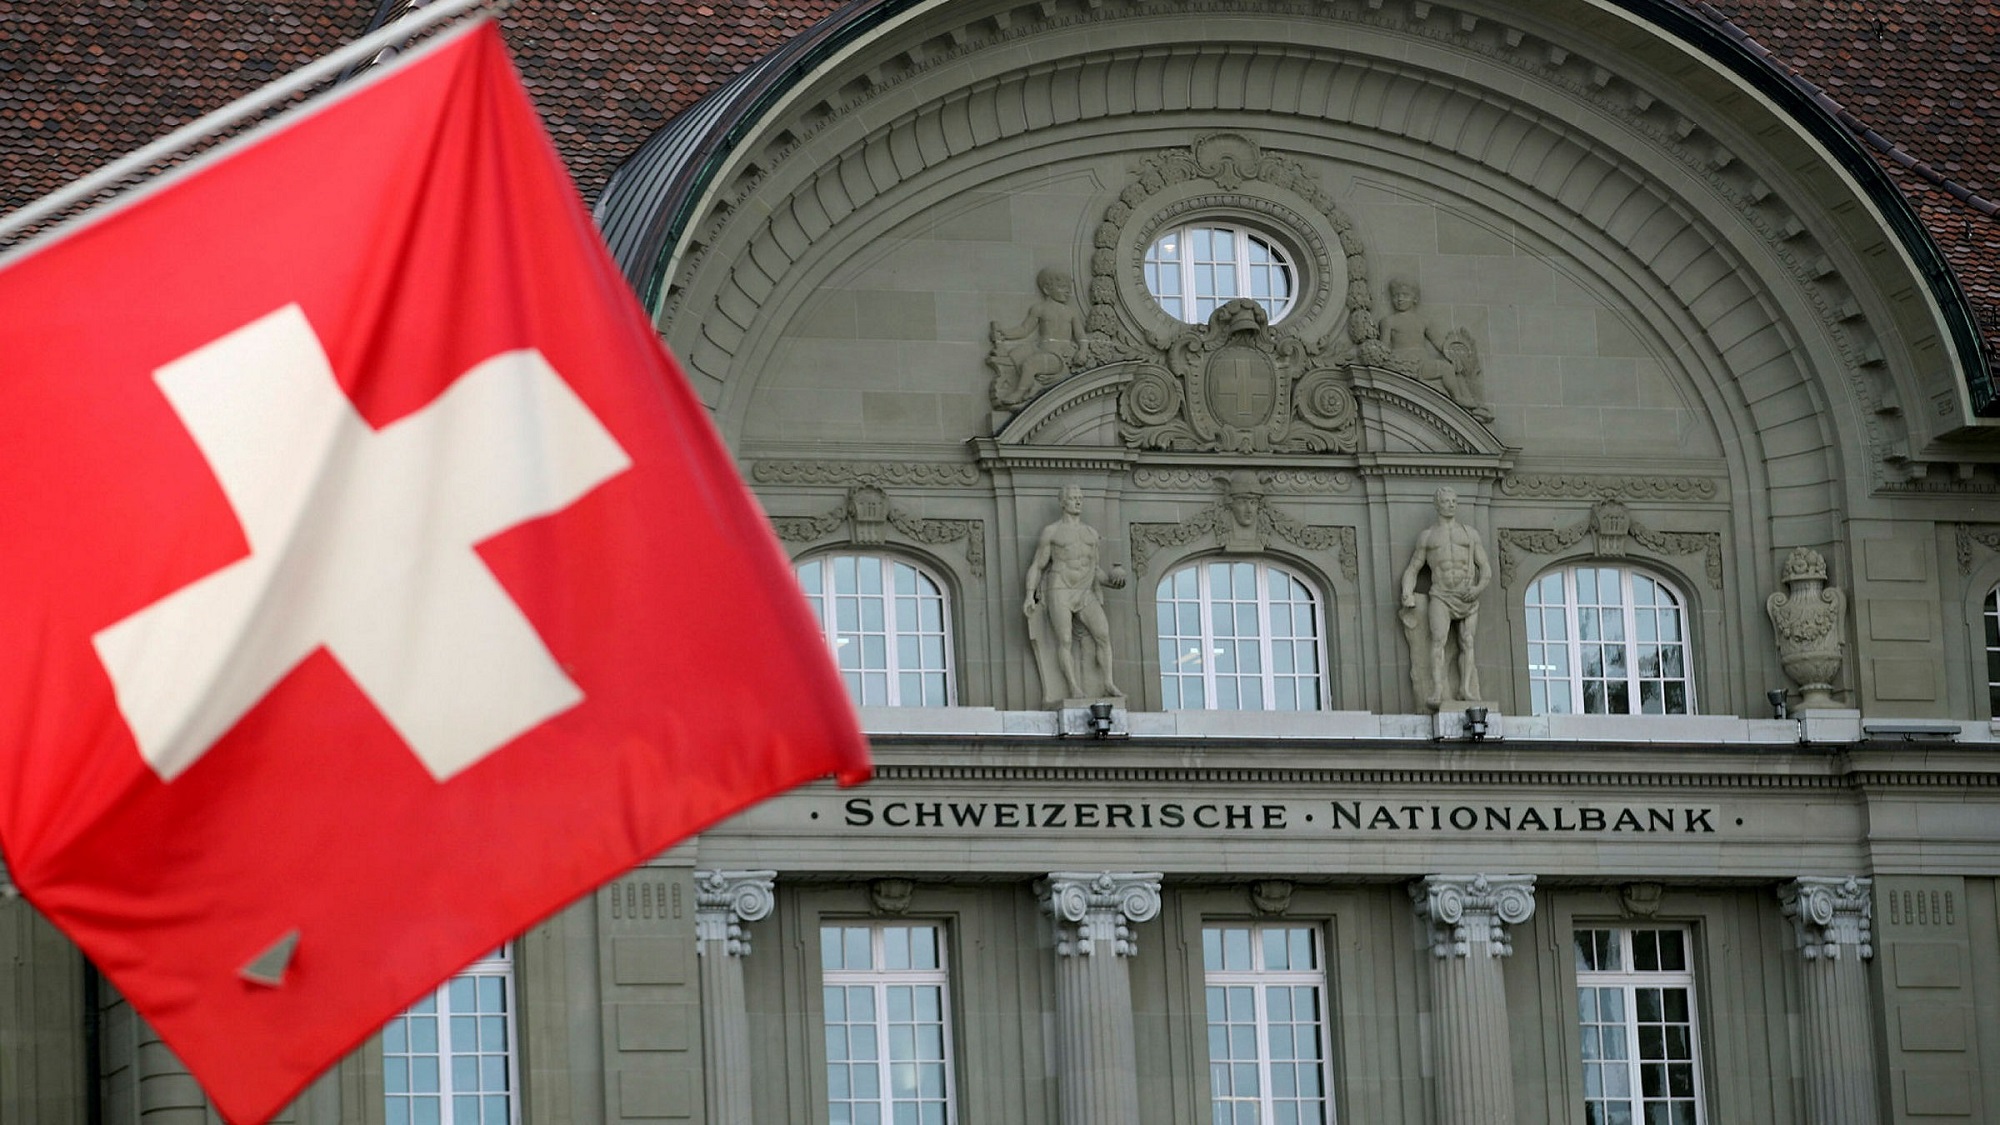 Ελβετικό φράγκο: Τα νέα δεδομένα μετά την απόφαση του Ευρωπαϊκού Δικαστηρίου – Πώς την αξιολογεί ο ΣΥ.ΔΑΝ.Ε.Φ.